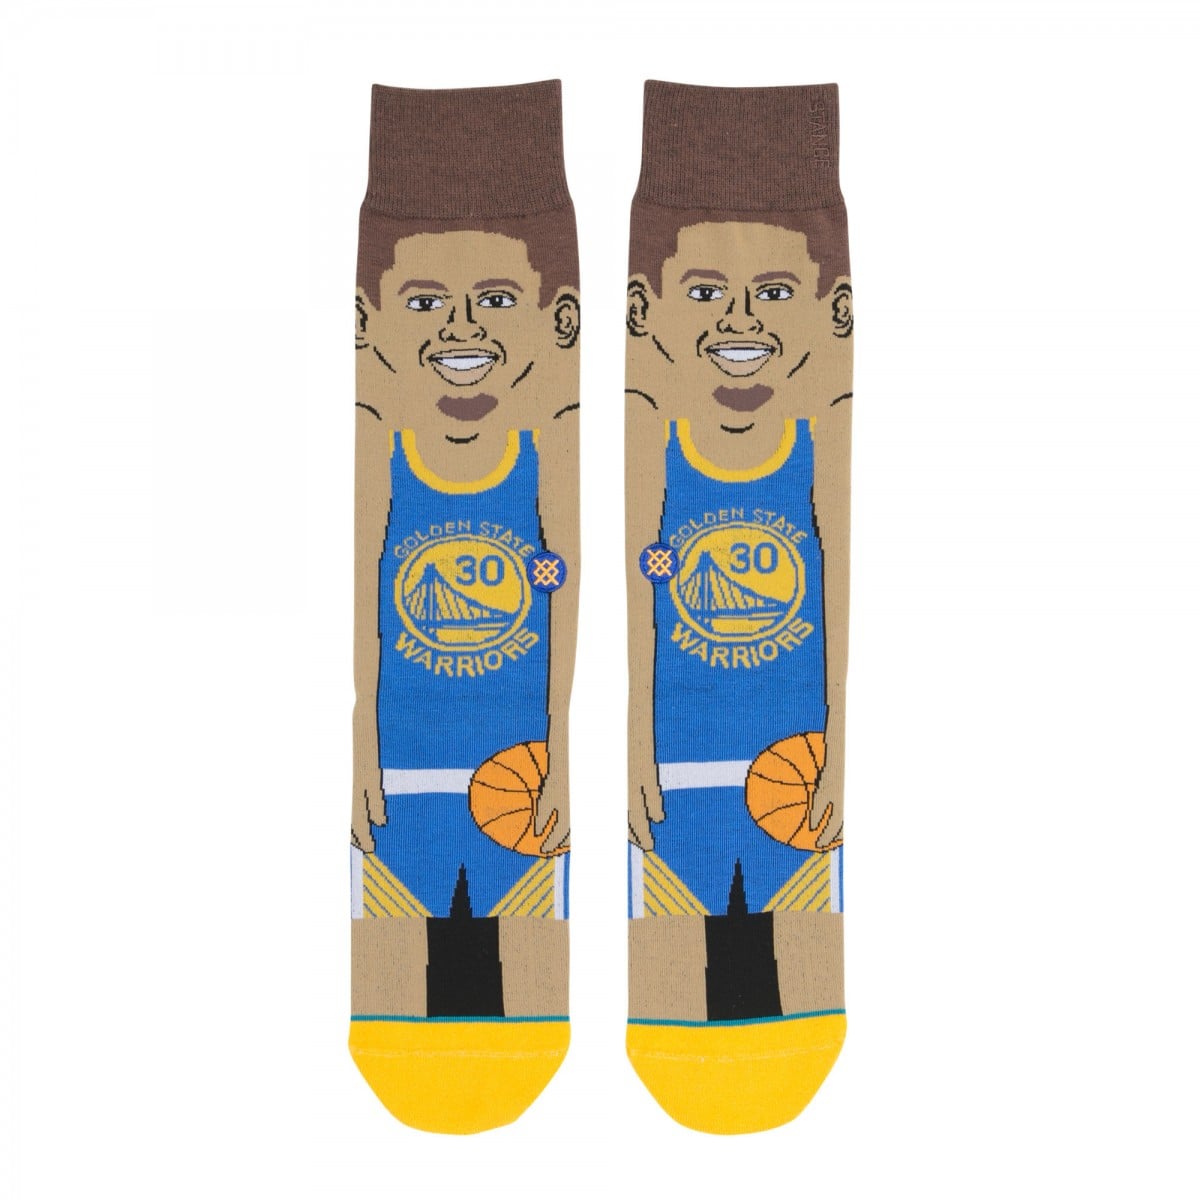 STANCE 襪子 – NBA S. CURRY 史蒂芬 · 柯瑞 卡通款 男襪 – M545C16SCU 2